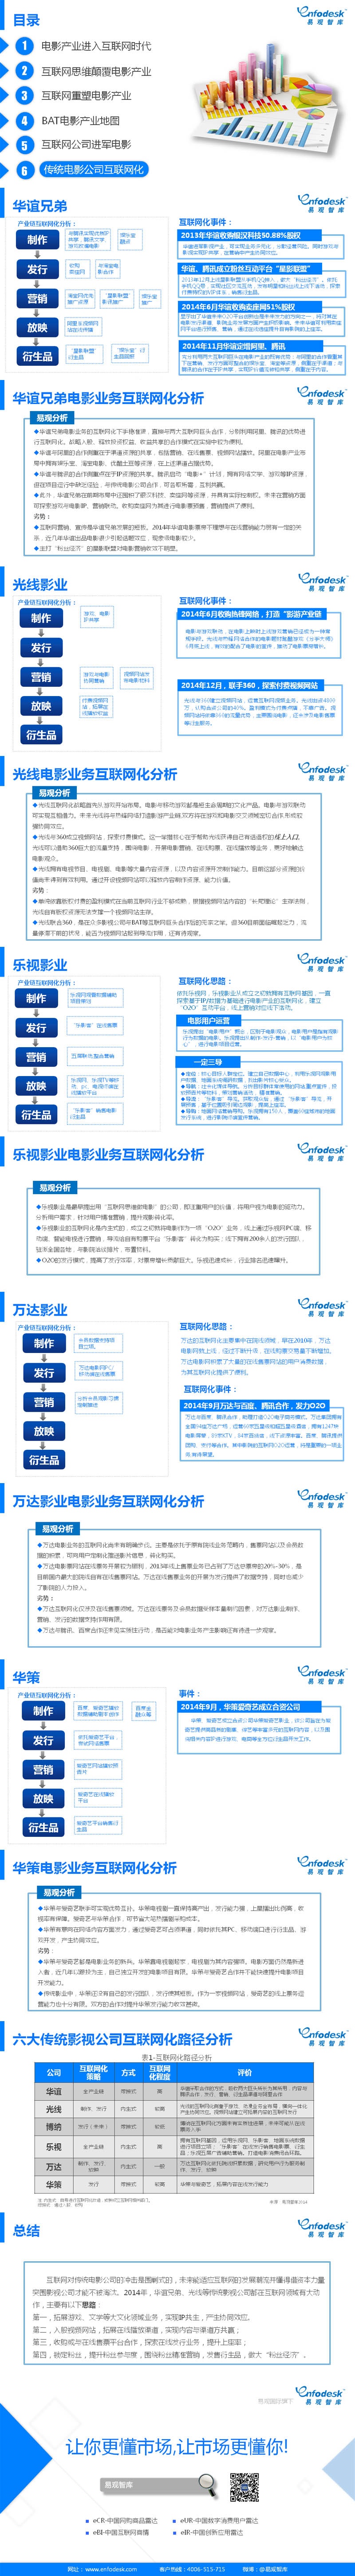 中国电影市场互联网化专题研究报告——传统电影公司互联网化